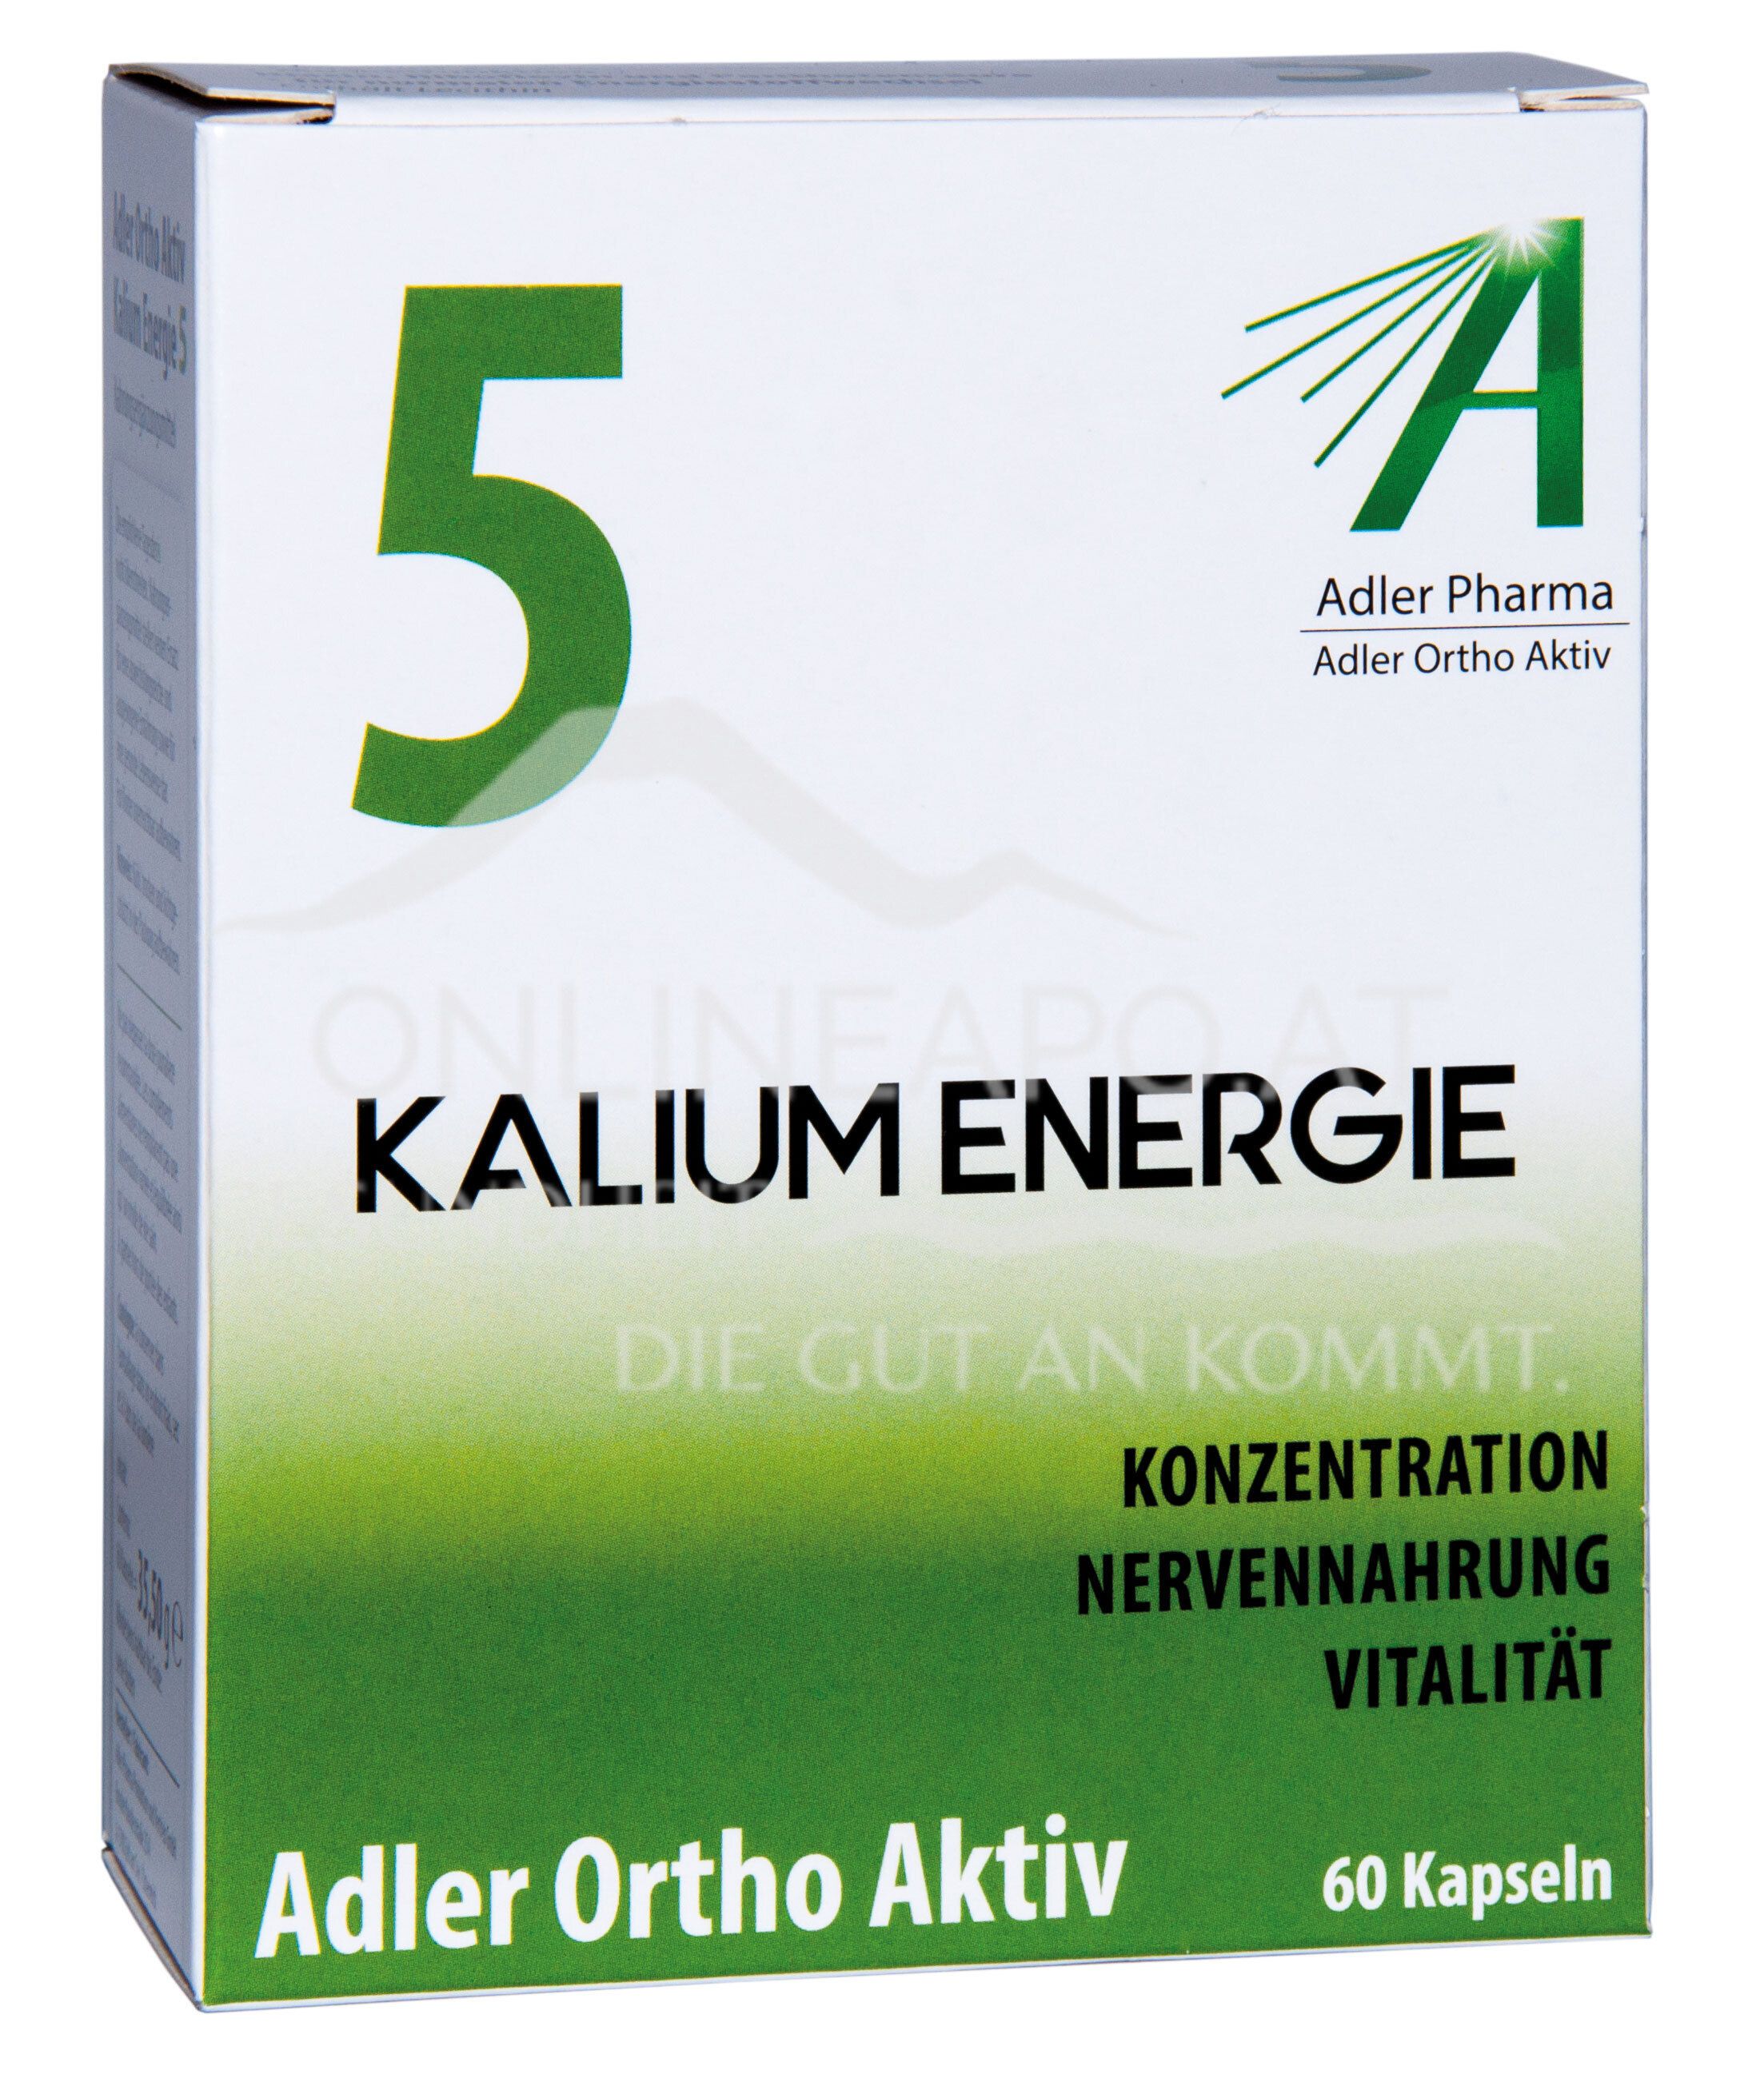 Adler Ortho Aktiv Nr. 5 Kalium Energie Kapseln